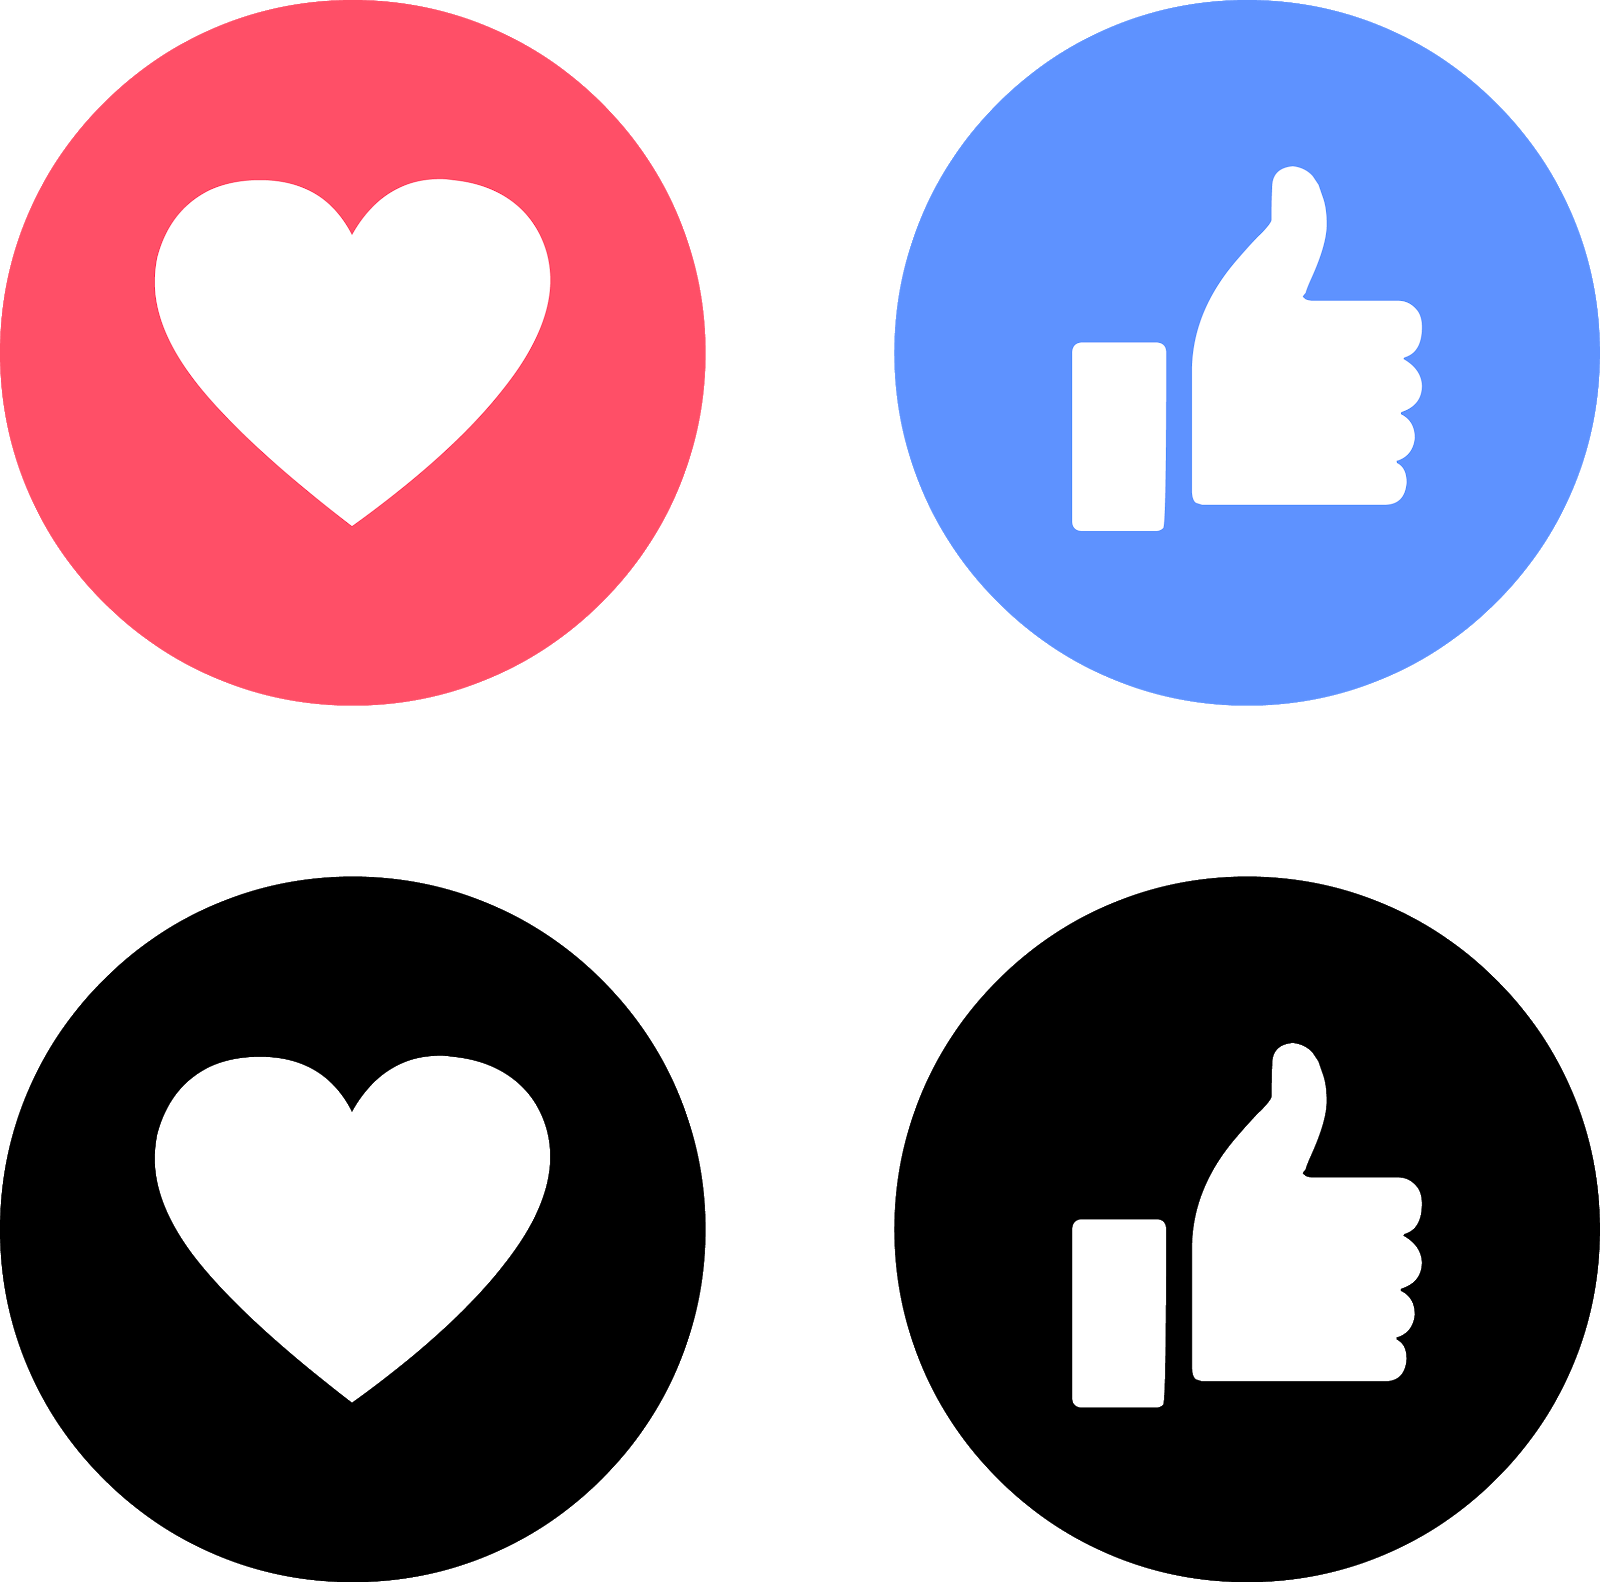 Download Like Love Facebook Icons Svg Eps Png Psd Ai El Fonts Vectors